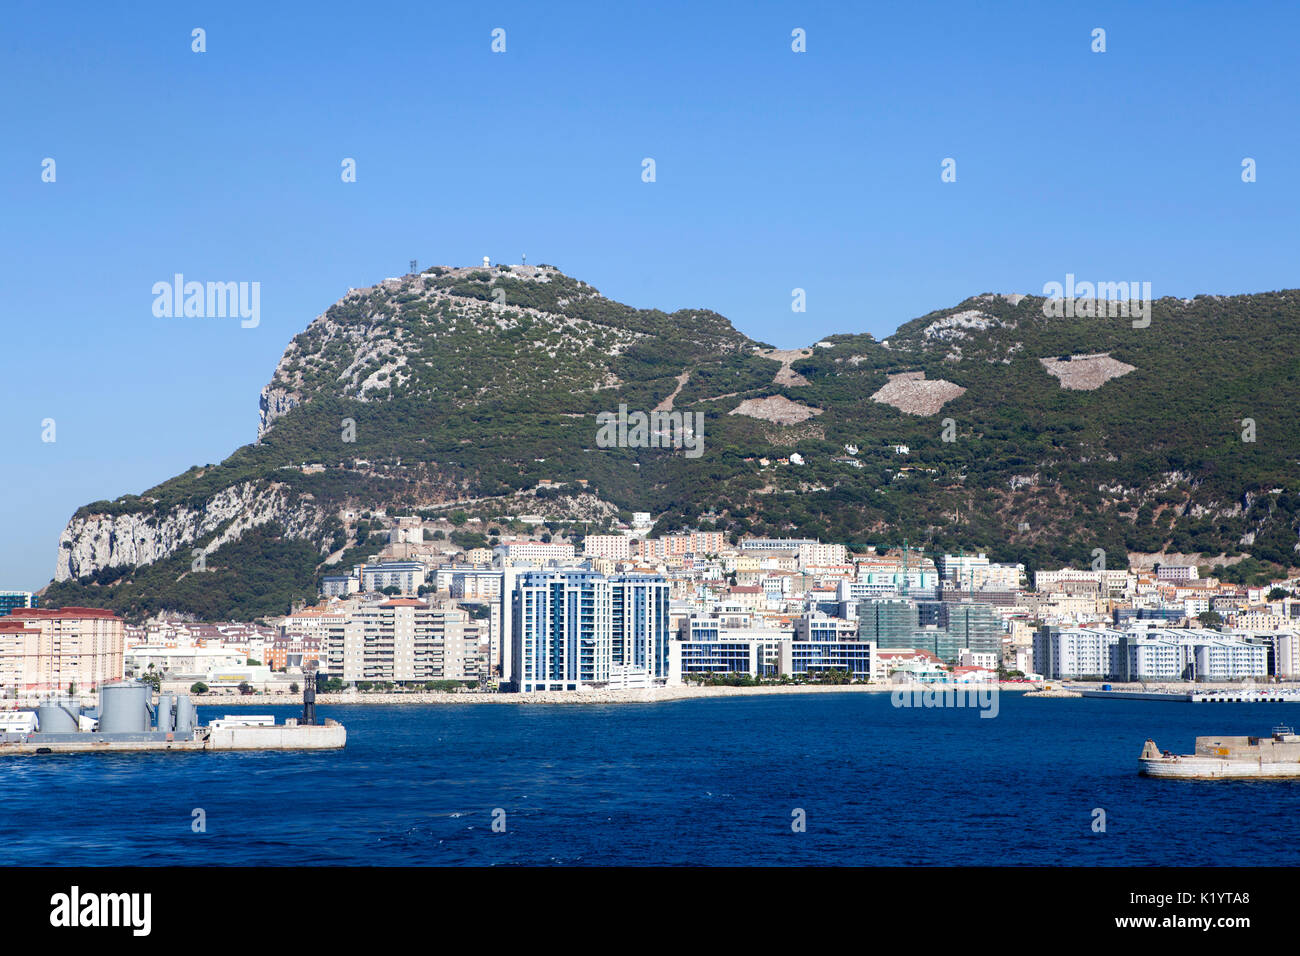 Der Felsen von Gibraltar monolithischen Kalkstein Vorgebirge in Britischen Überseegebiet Gibraltar auf der Iberischen Halbinsel Stockfoto